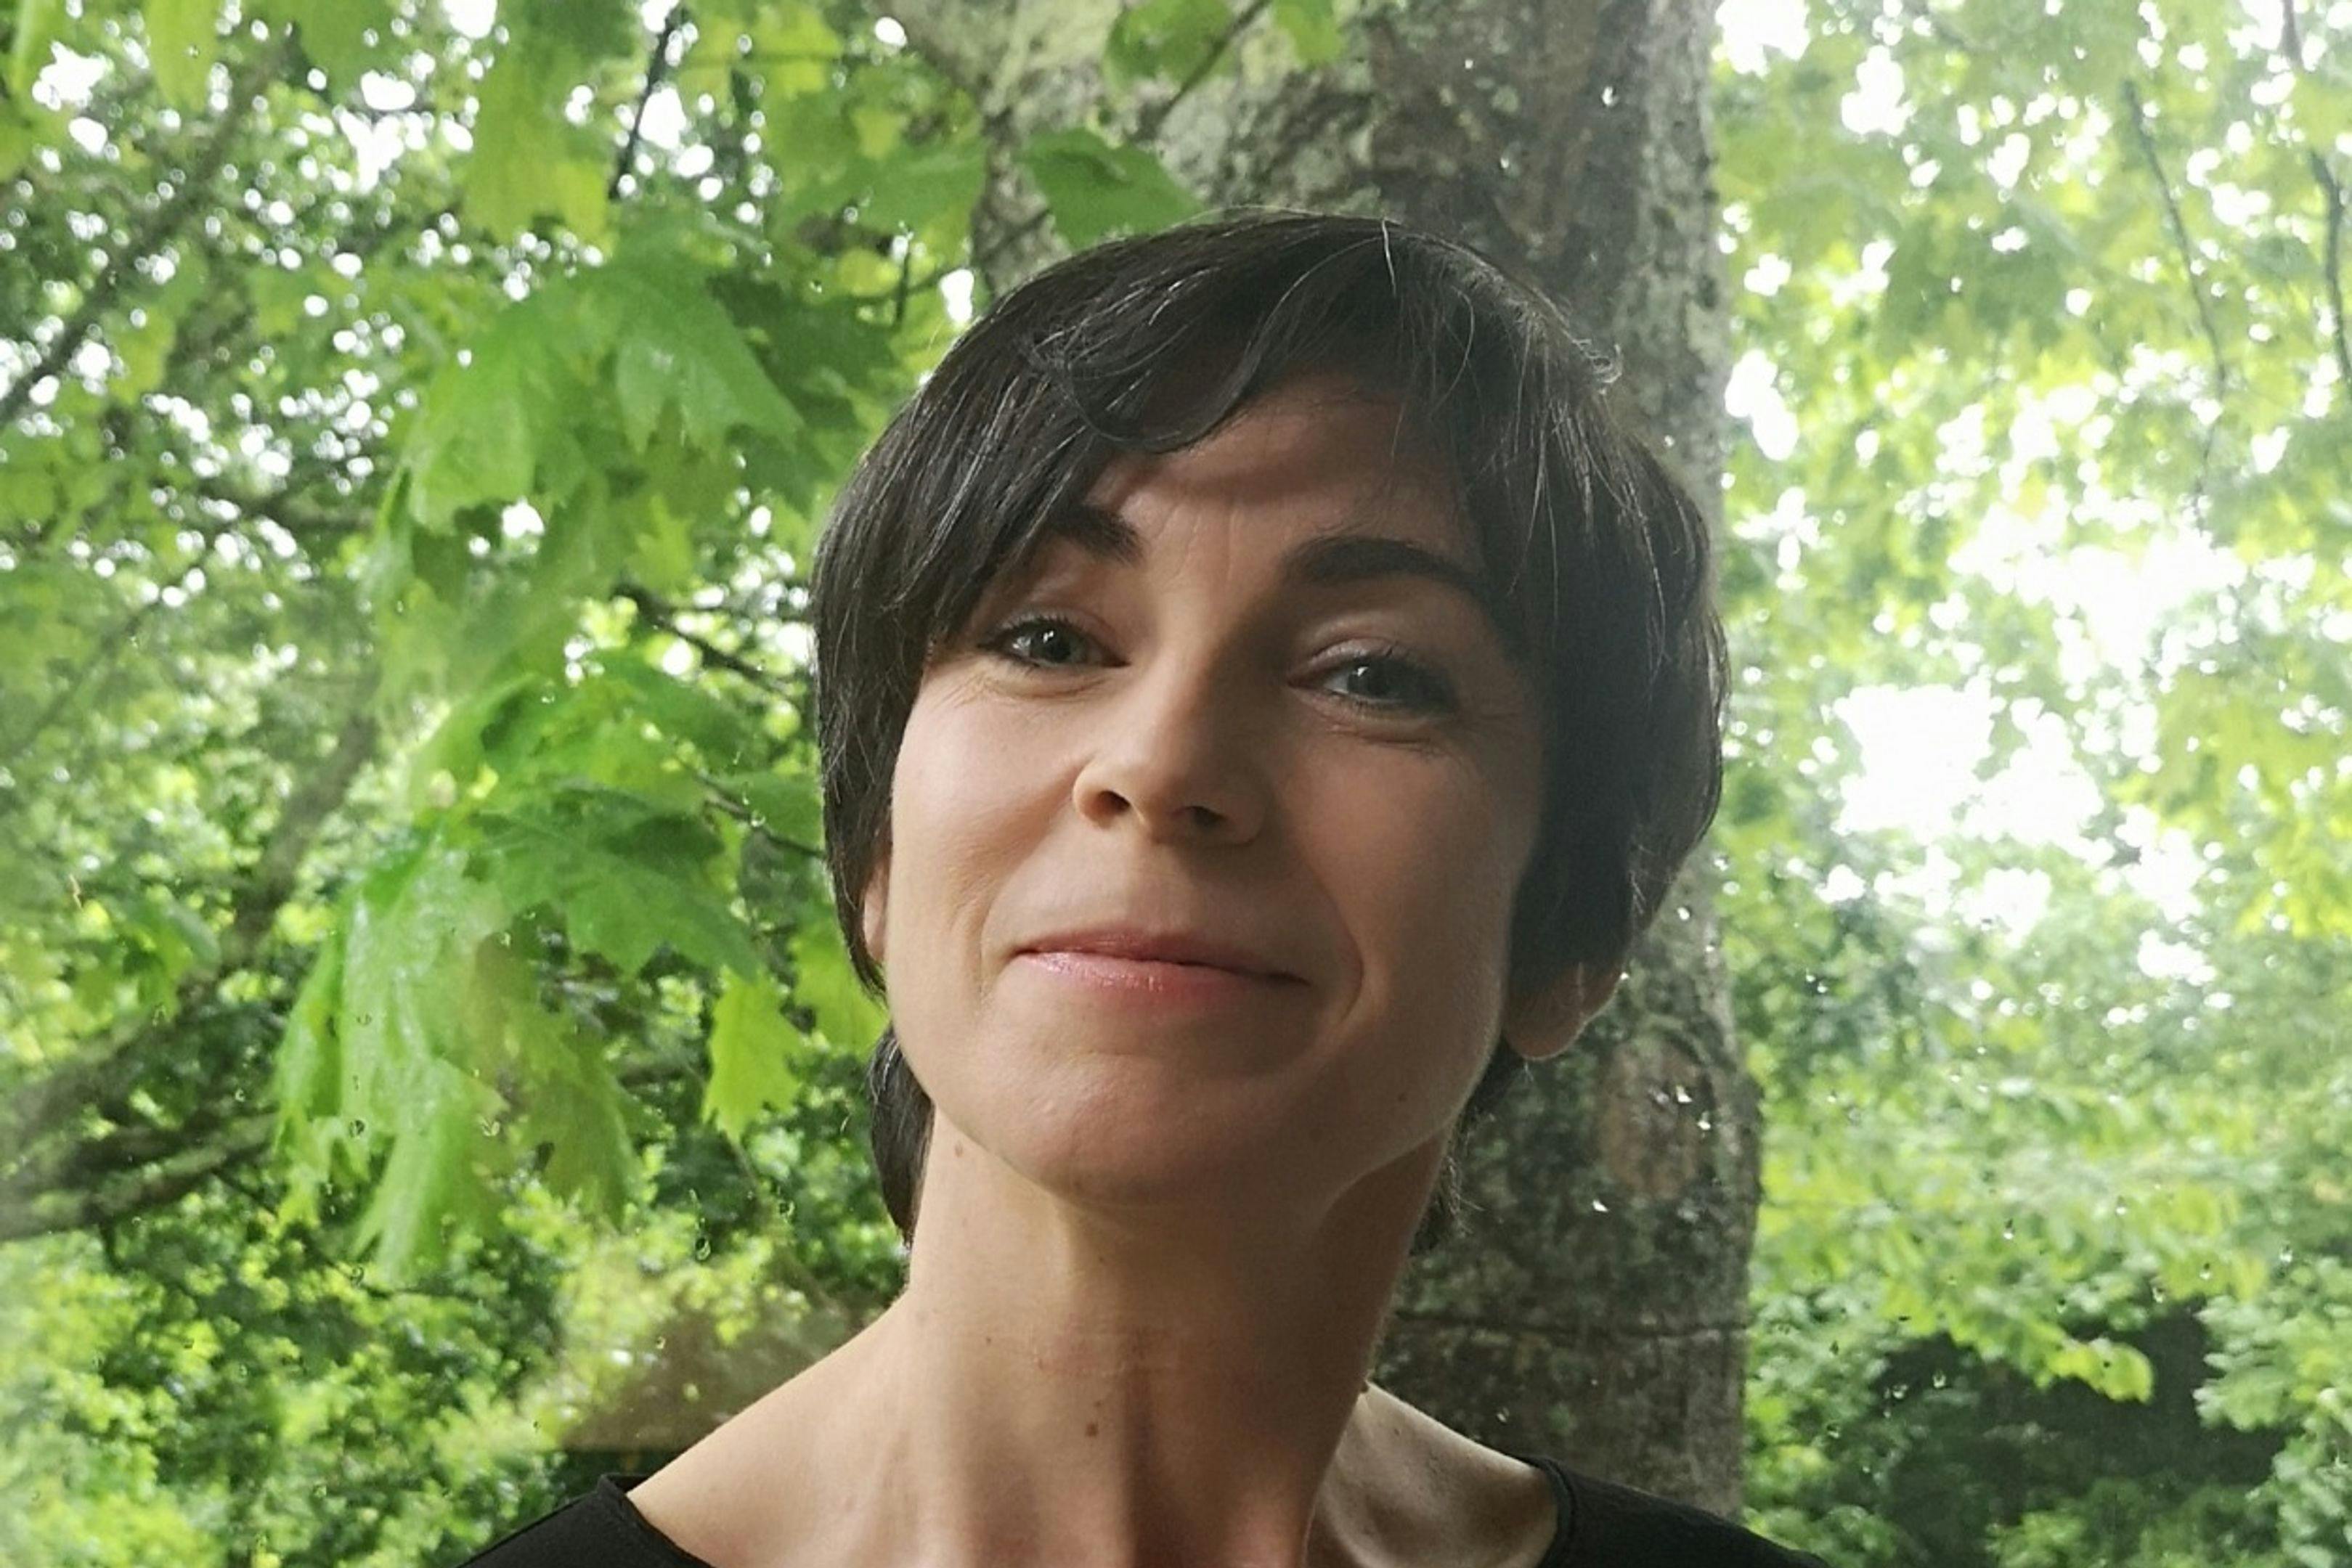 Araceli Gonda, guionista gallega responsable de 'Cuñados' y su secuela, 'Hierro' o 'Serramoura'